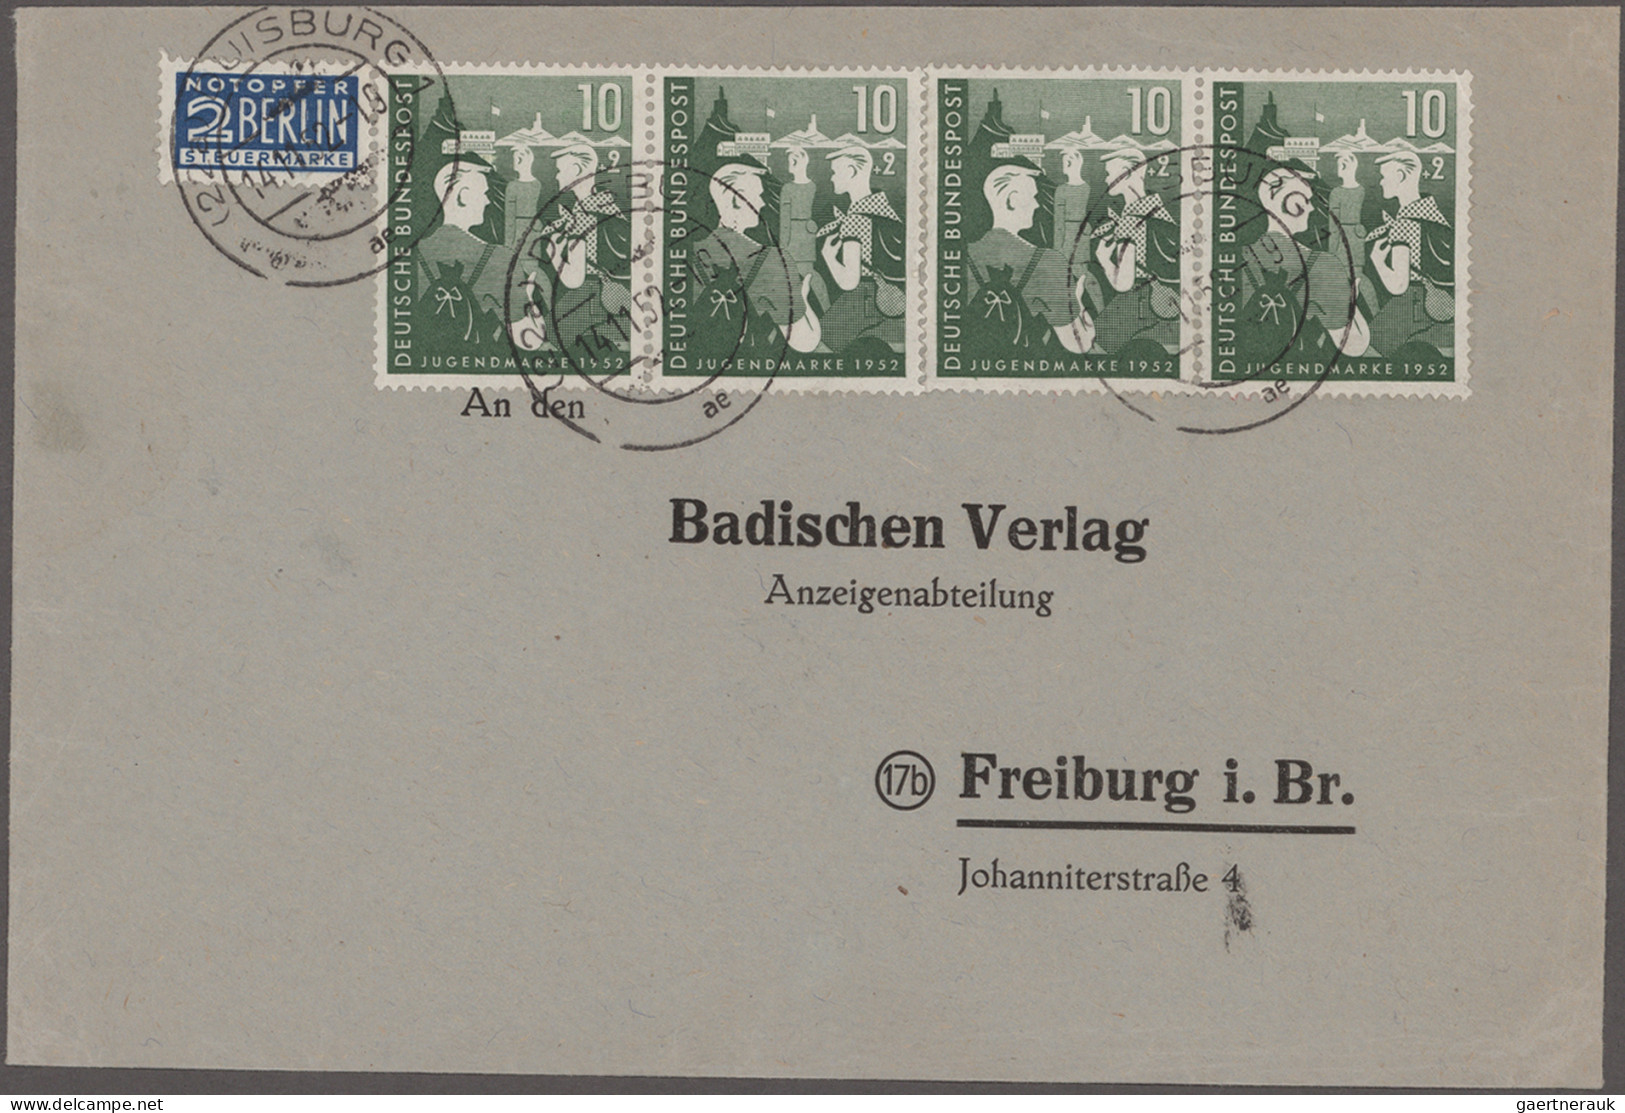 Bundesrepublik Deutschland: 1949/1954, umfangreiche Sammlung der Sondermarkenaus